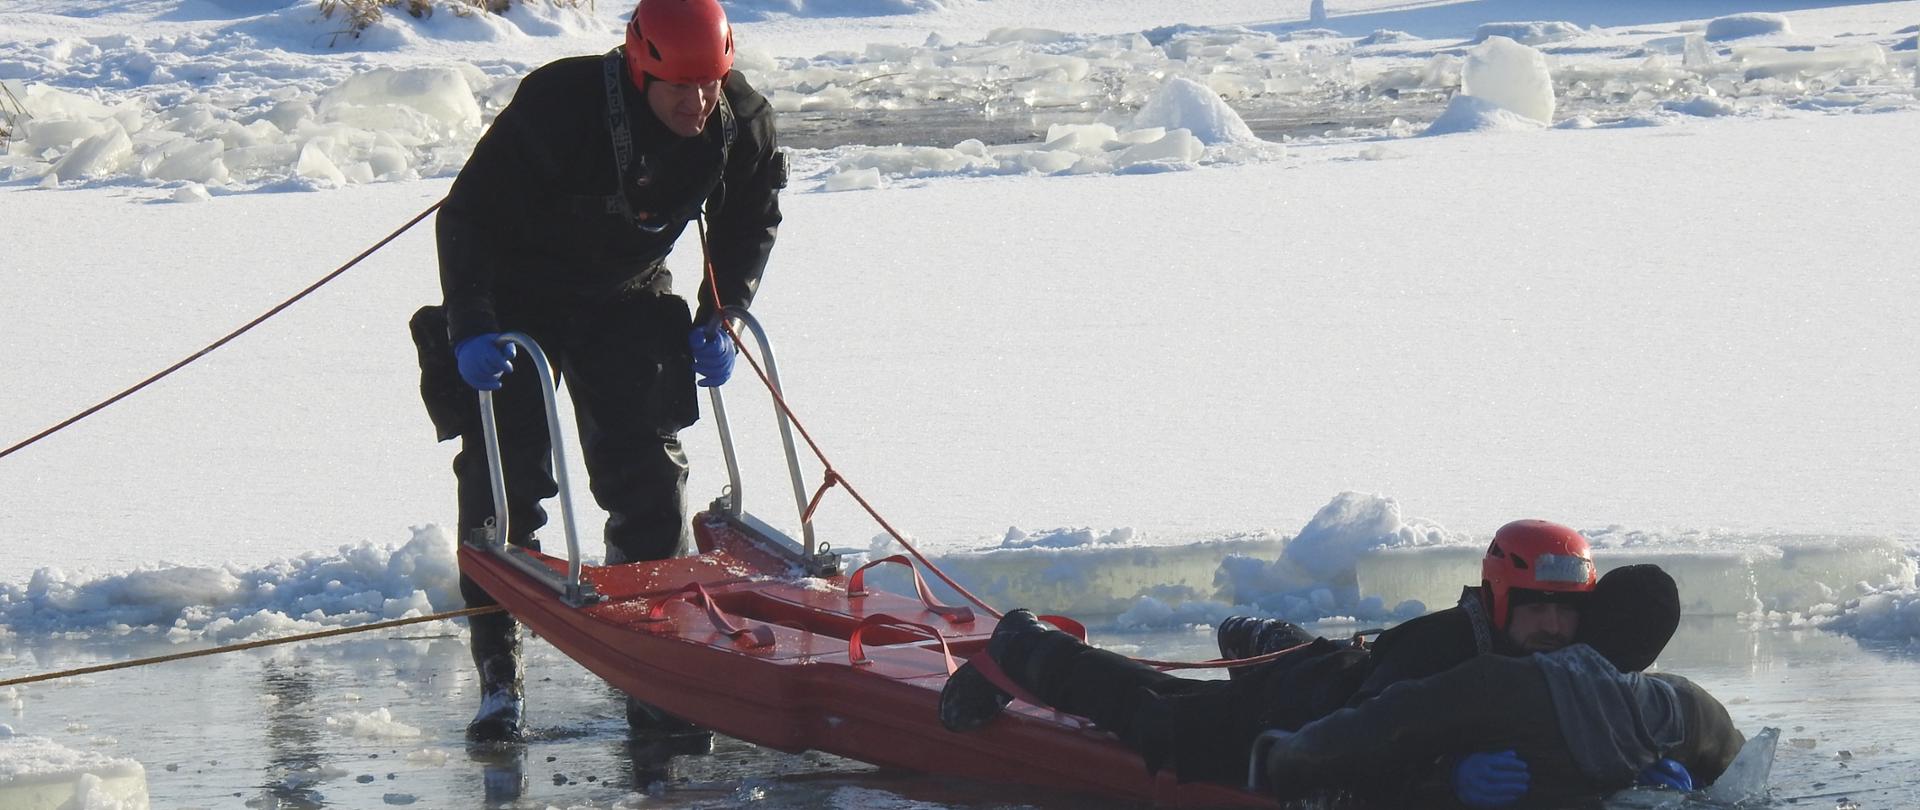 Wykorzystanie sań lodowych - sprzętu w dyspozycji strażaków do wyciągnięcia człowieka, pod którym załamał się lód z wody